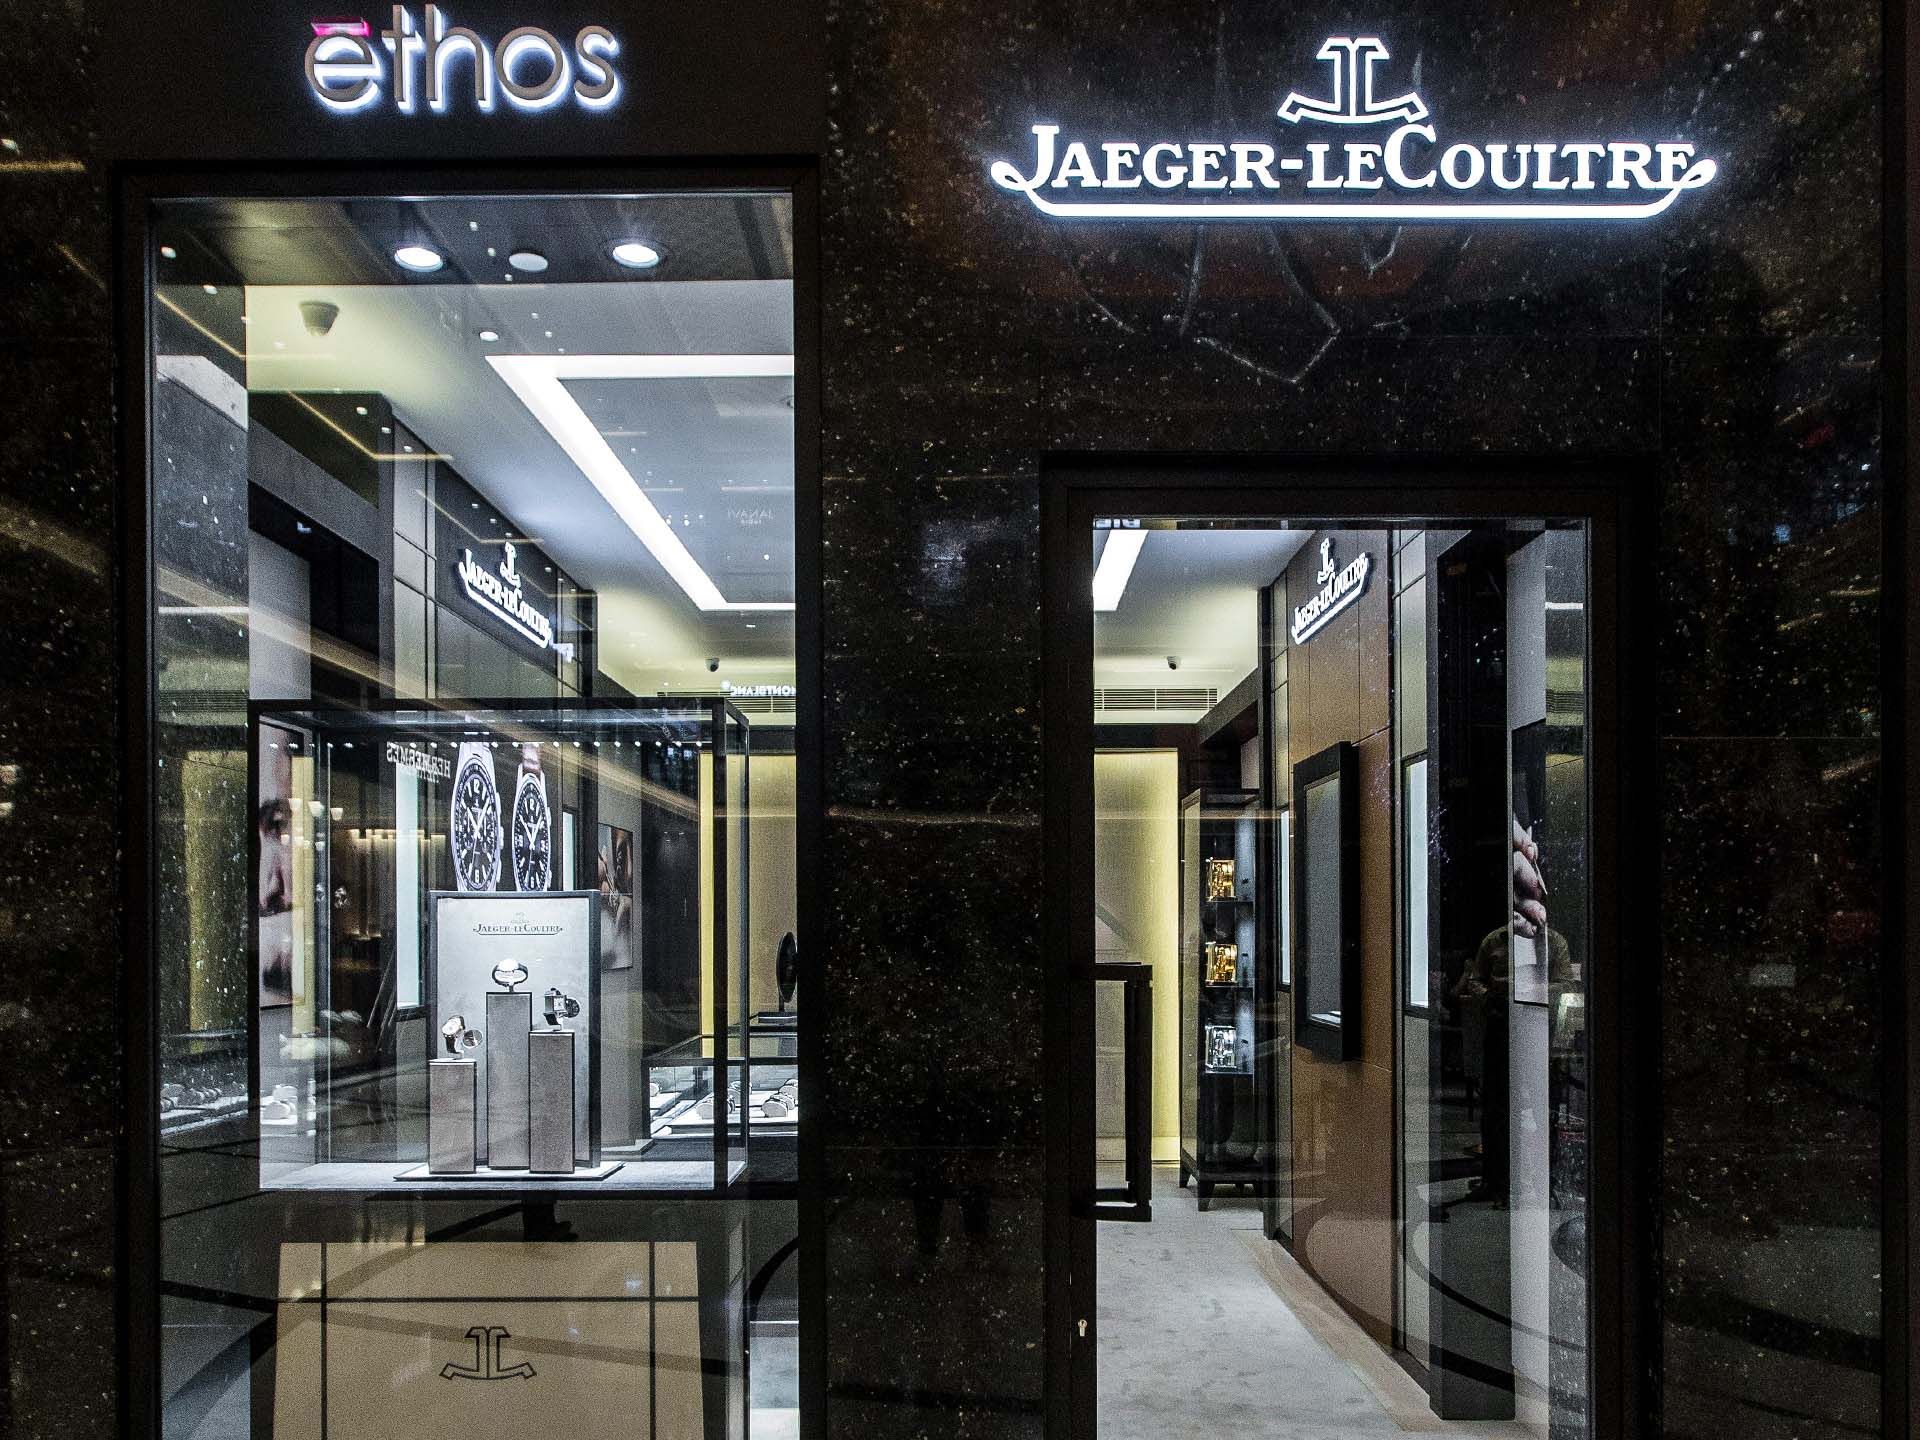 Jaeger-LeCoultre Boutique - Ethos Watches, New Delhi, Delhi